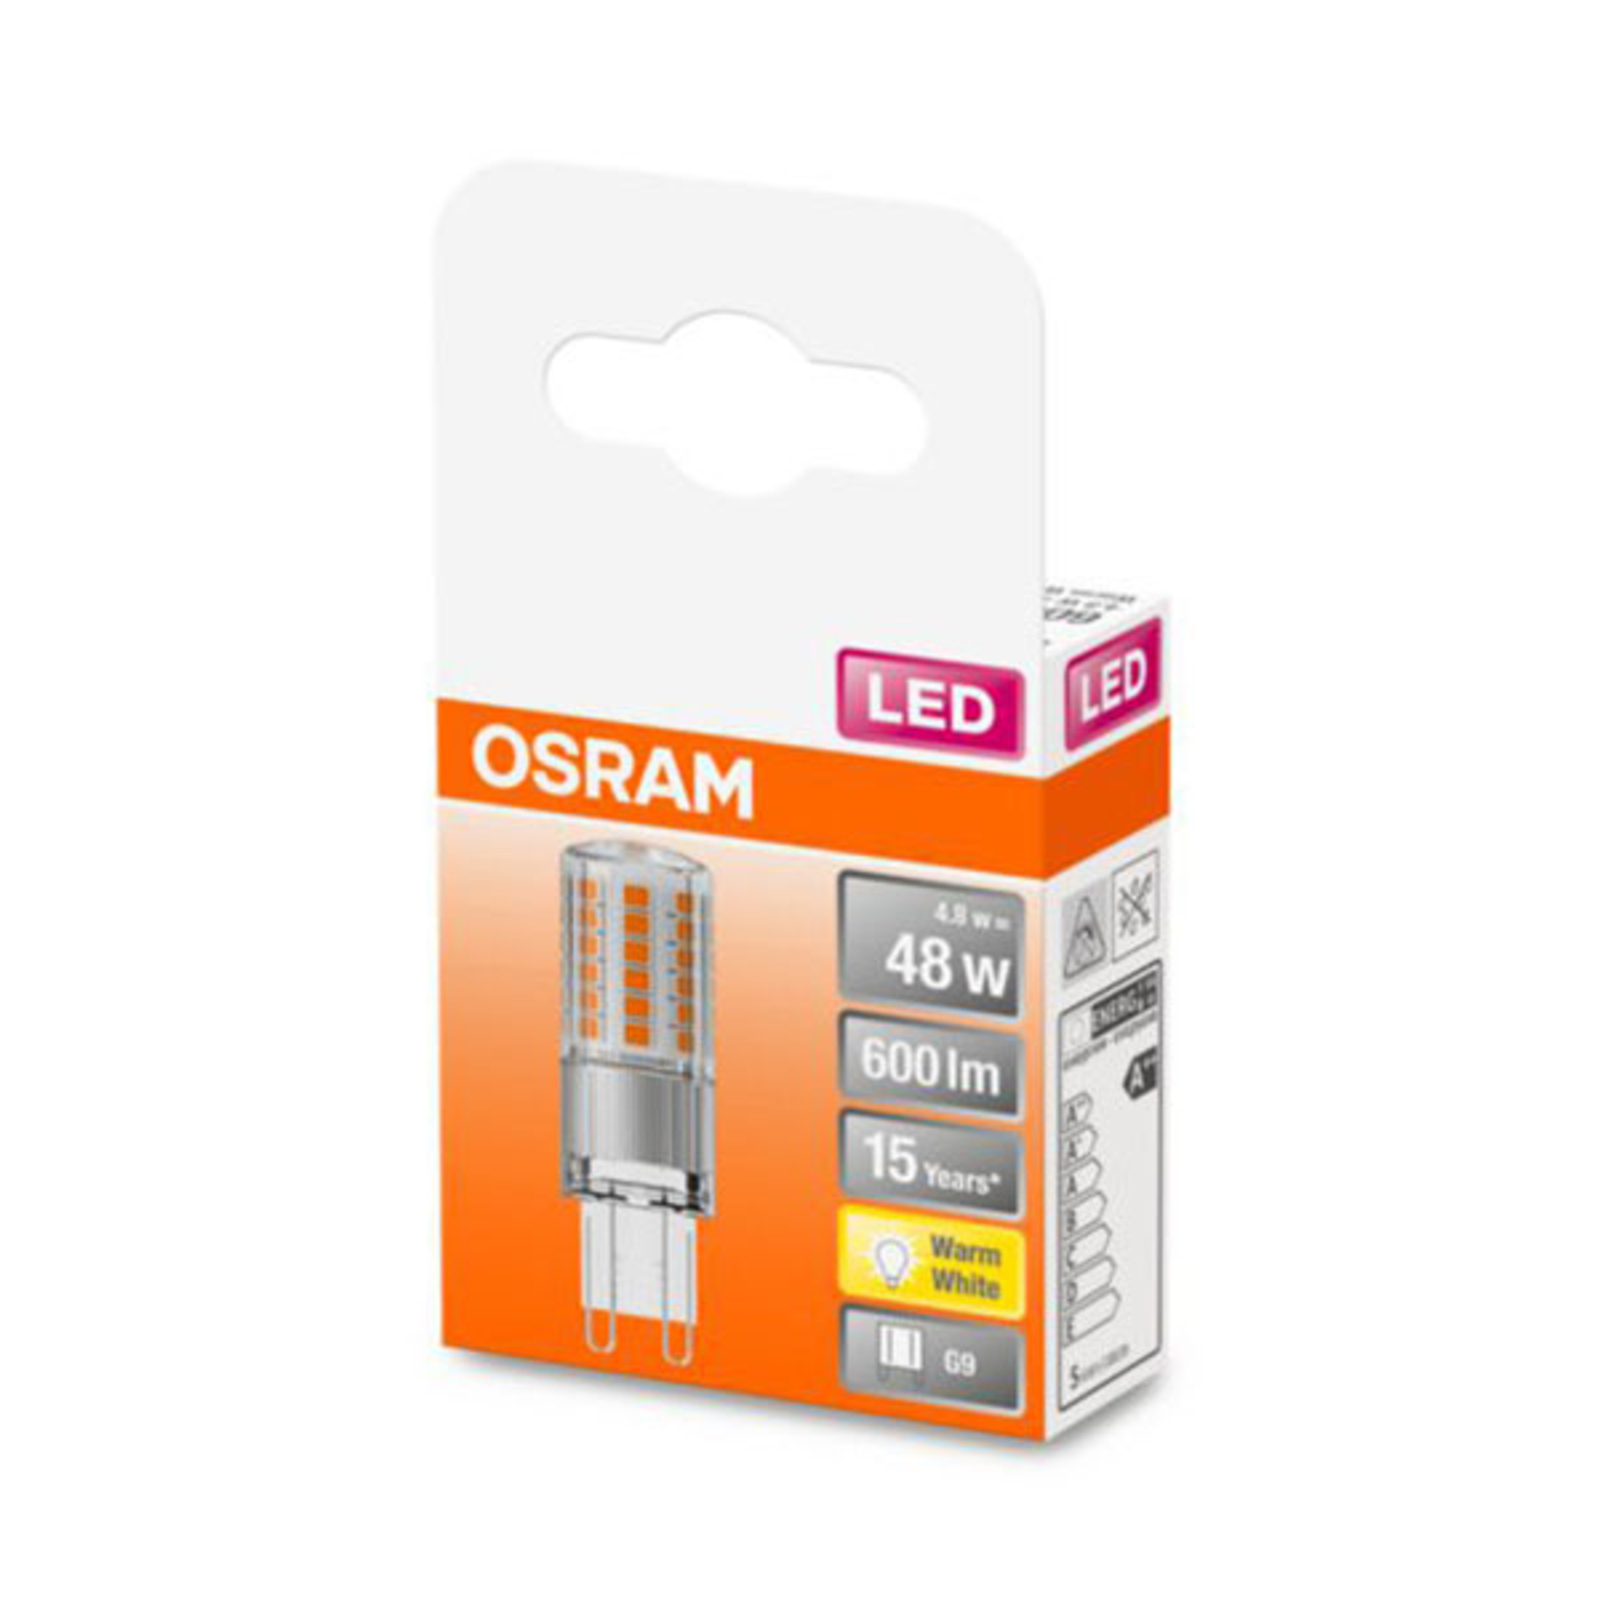 OSRAM LED stiftlamp G9 4,8W 2.700K helder